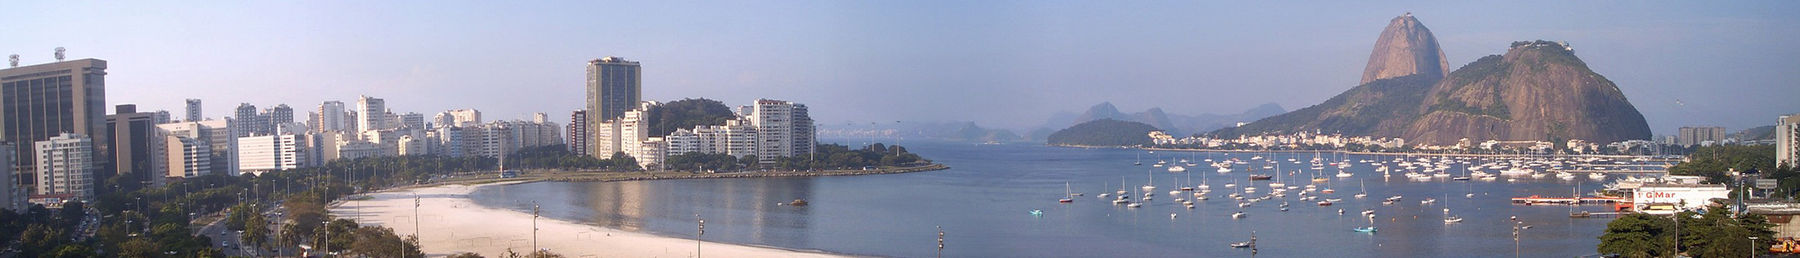 Botafogo, no Rio de Janeiro